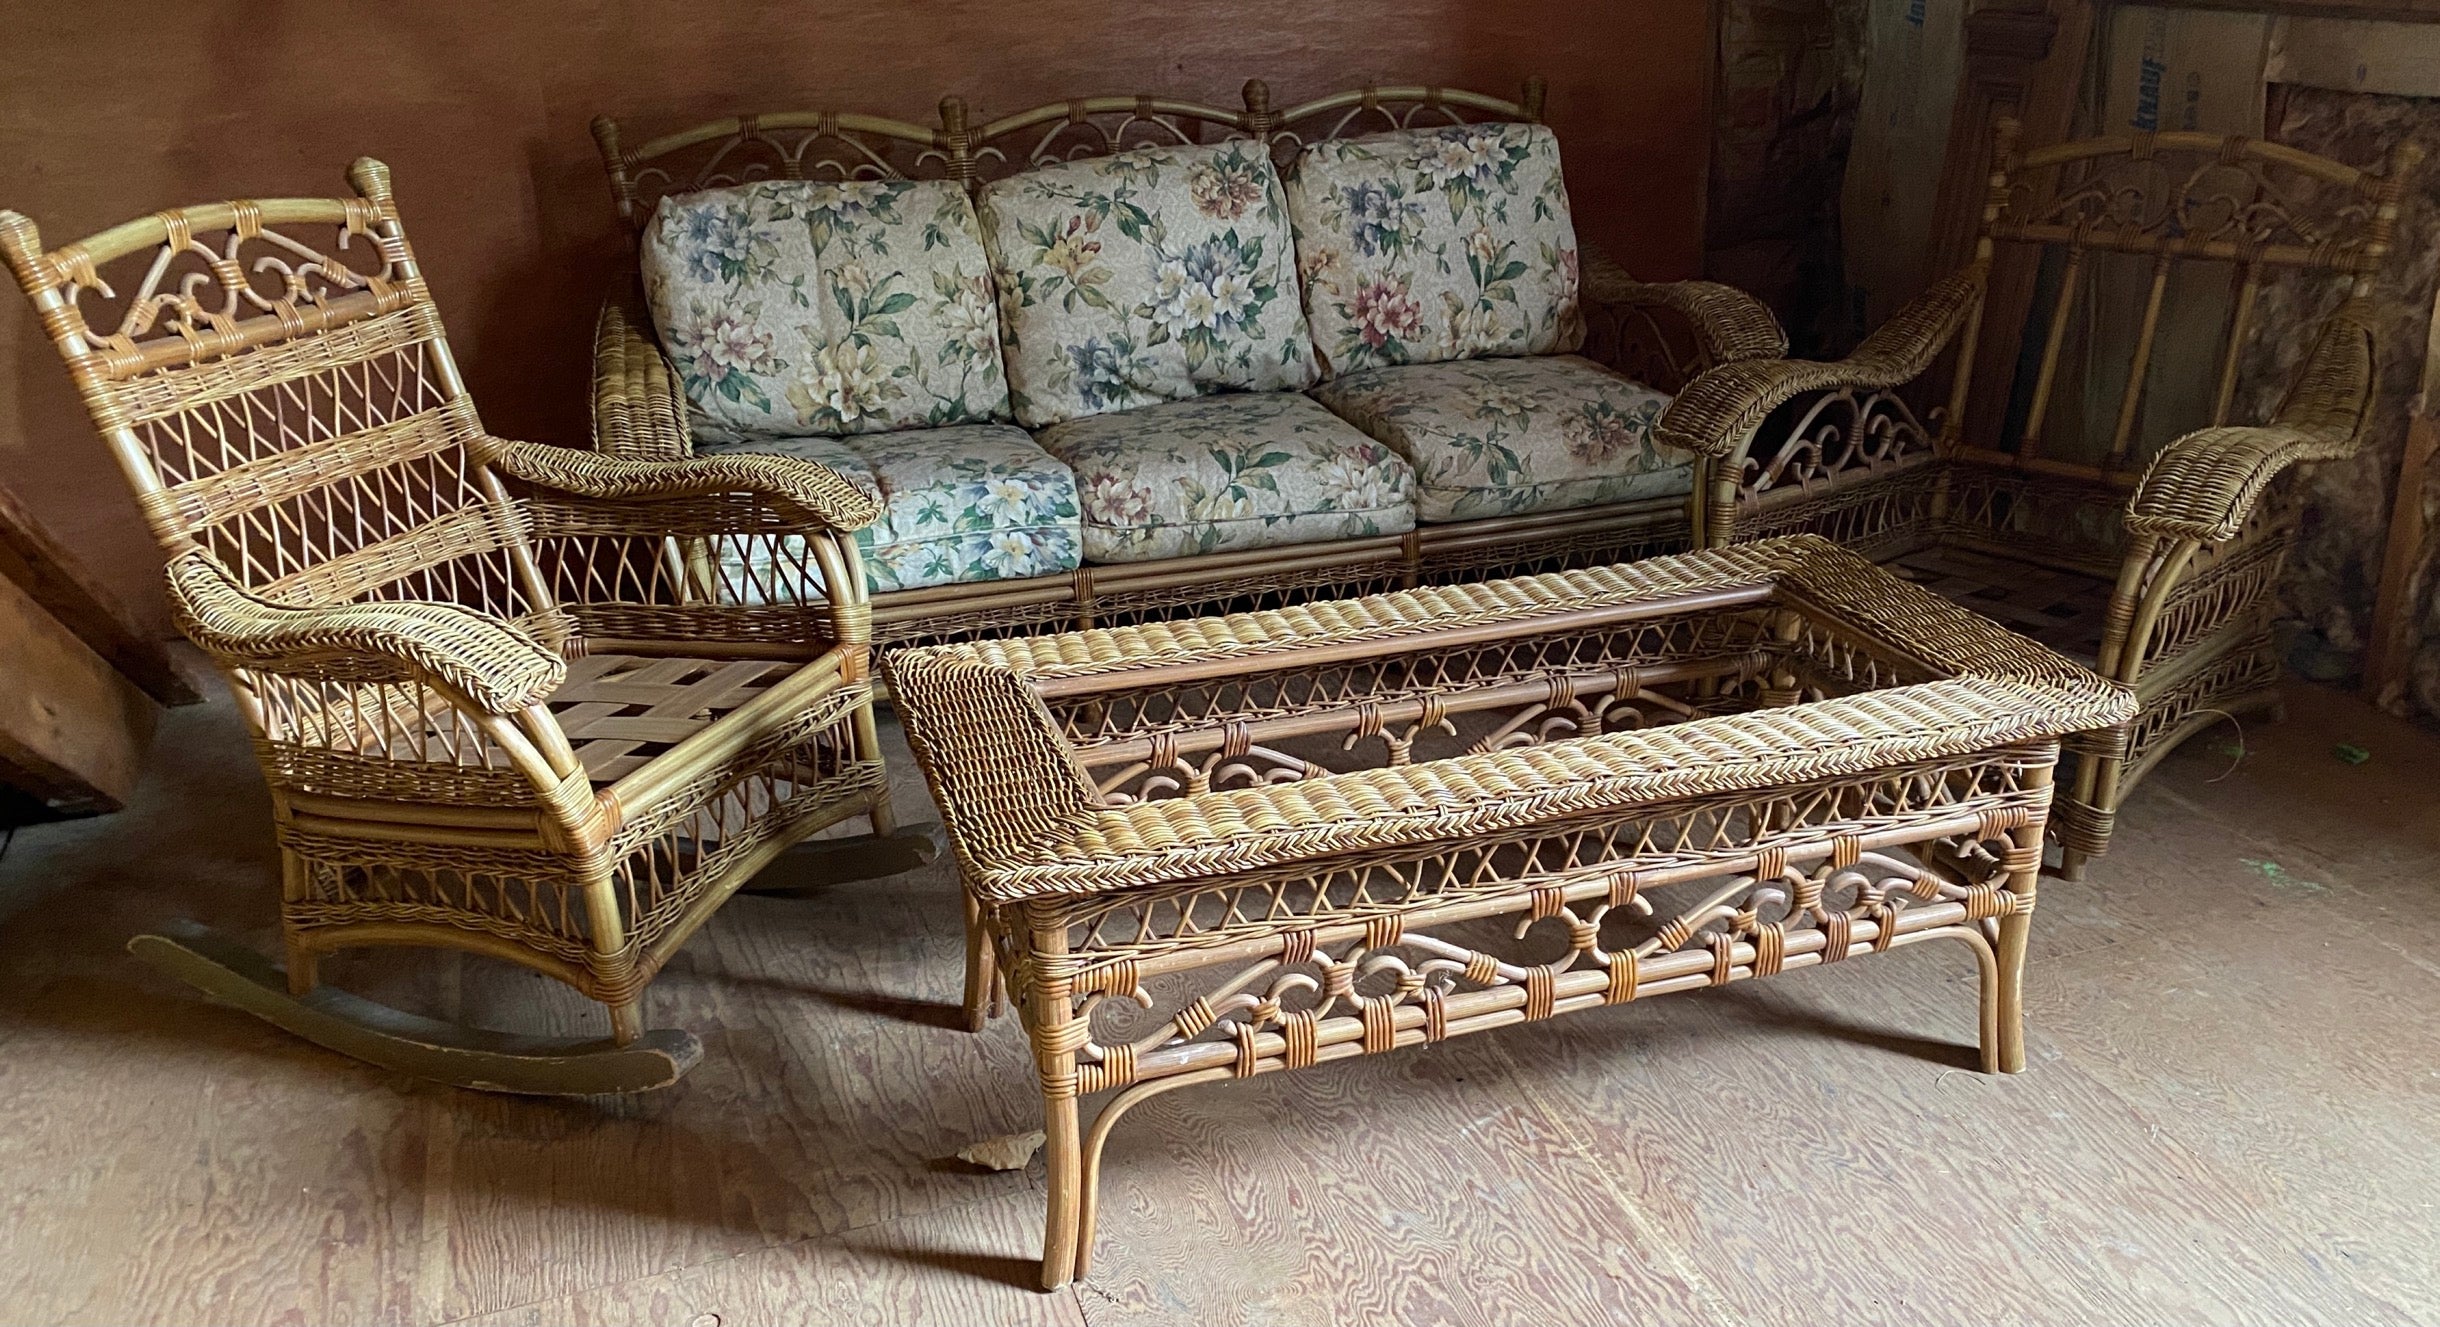 Ein seltener Fund - Ein amerikanischer viktorianischer (5) Stück Weide Veranda Sitzgarnitur einschließlich: Sofa, passende Schaukelstuhl, Sessel mit Ottomane und Glasplatte Couchtisch.
Kissen wie abgebildet nur für Sofa erhältlich. Die Glasplatte